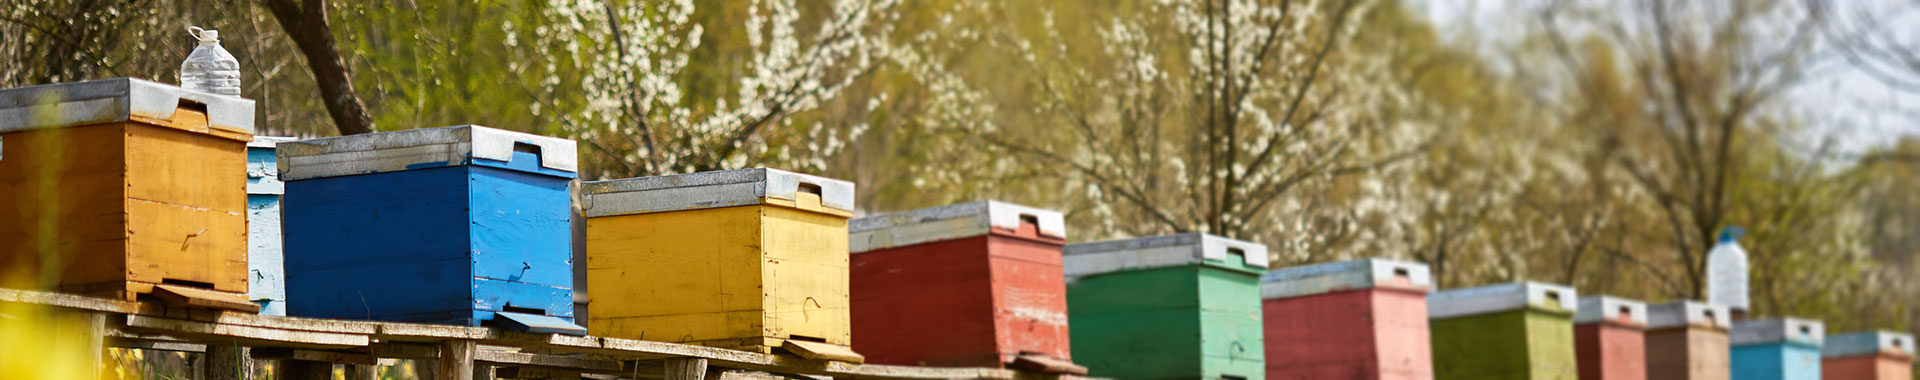 Bunte Bienenbeuten in einer Reihe